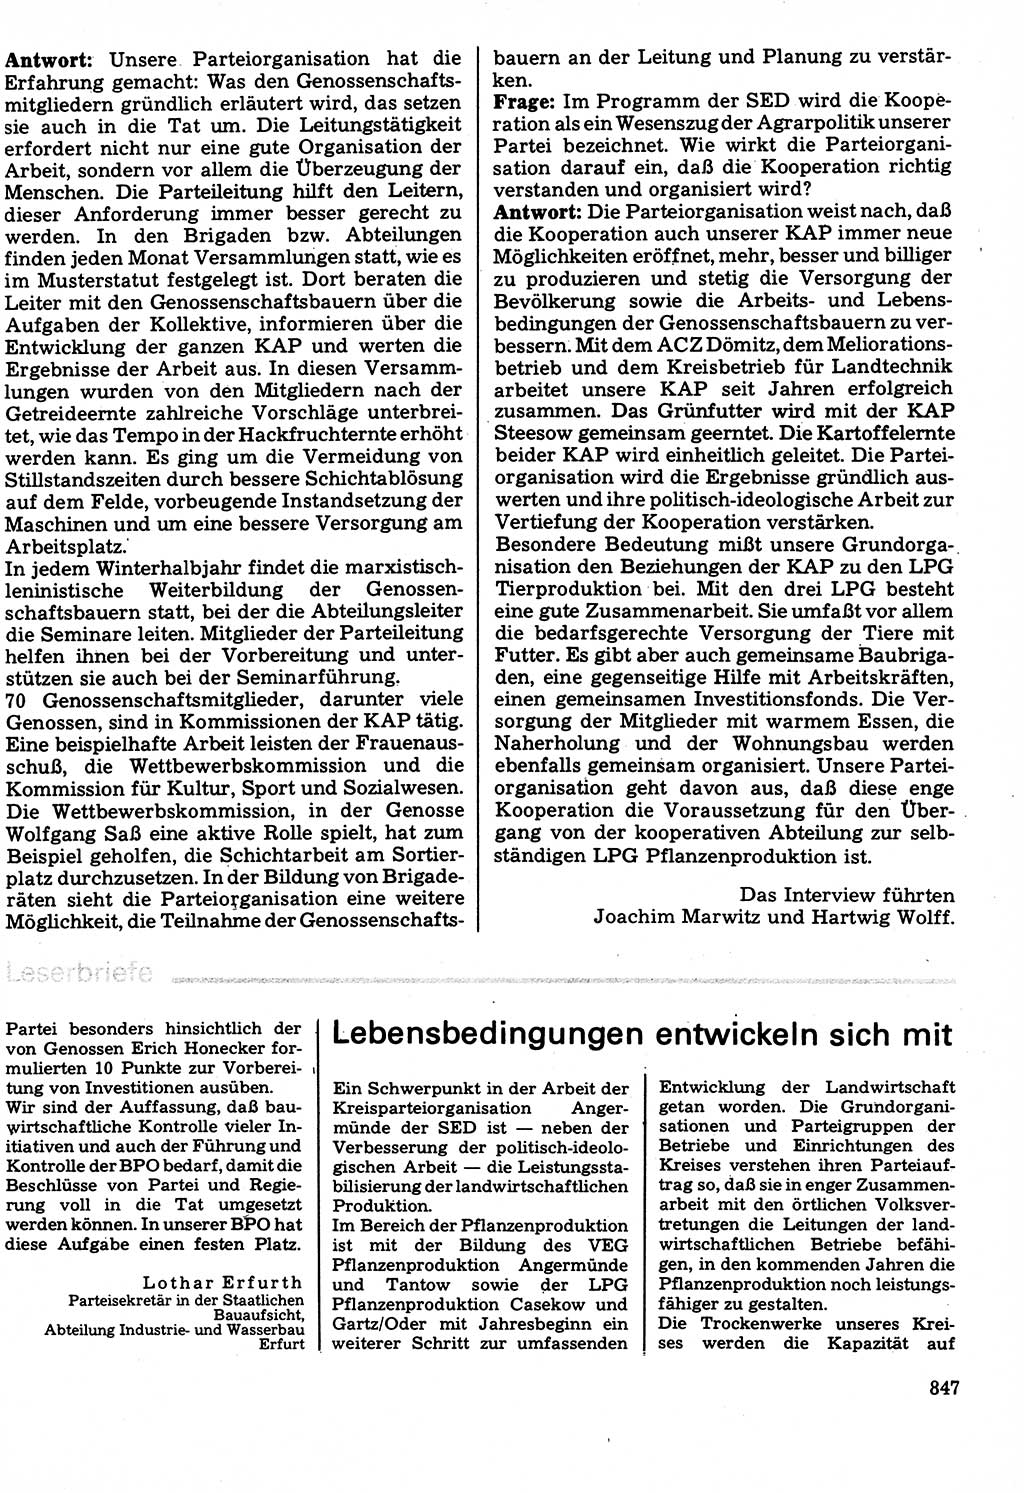 Neuer Weg (NW), Organ des Zentralkomitees (ZK) der SED (Sozialistische Einheitspartei Deutschlands) für Fragen des Parteilebens, 32. Jahrgang [Deutsche Demokratische Republik (DDR)] 1977, Seite 847 (NW ZK SED DDR 1977, S. 847)